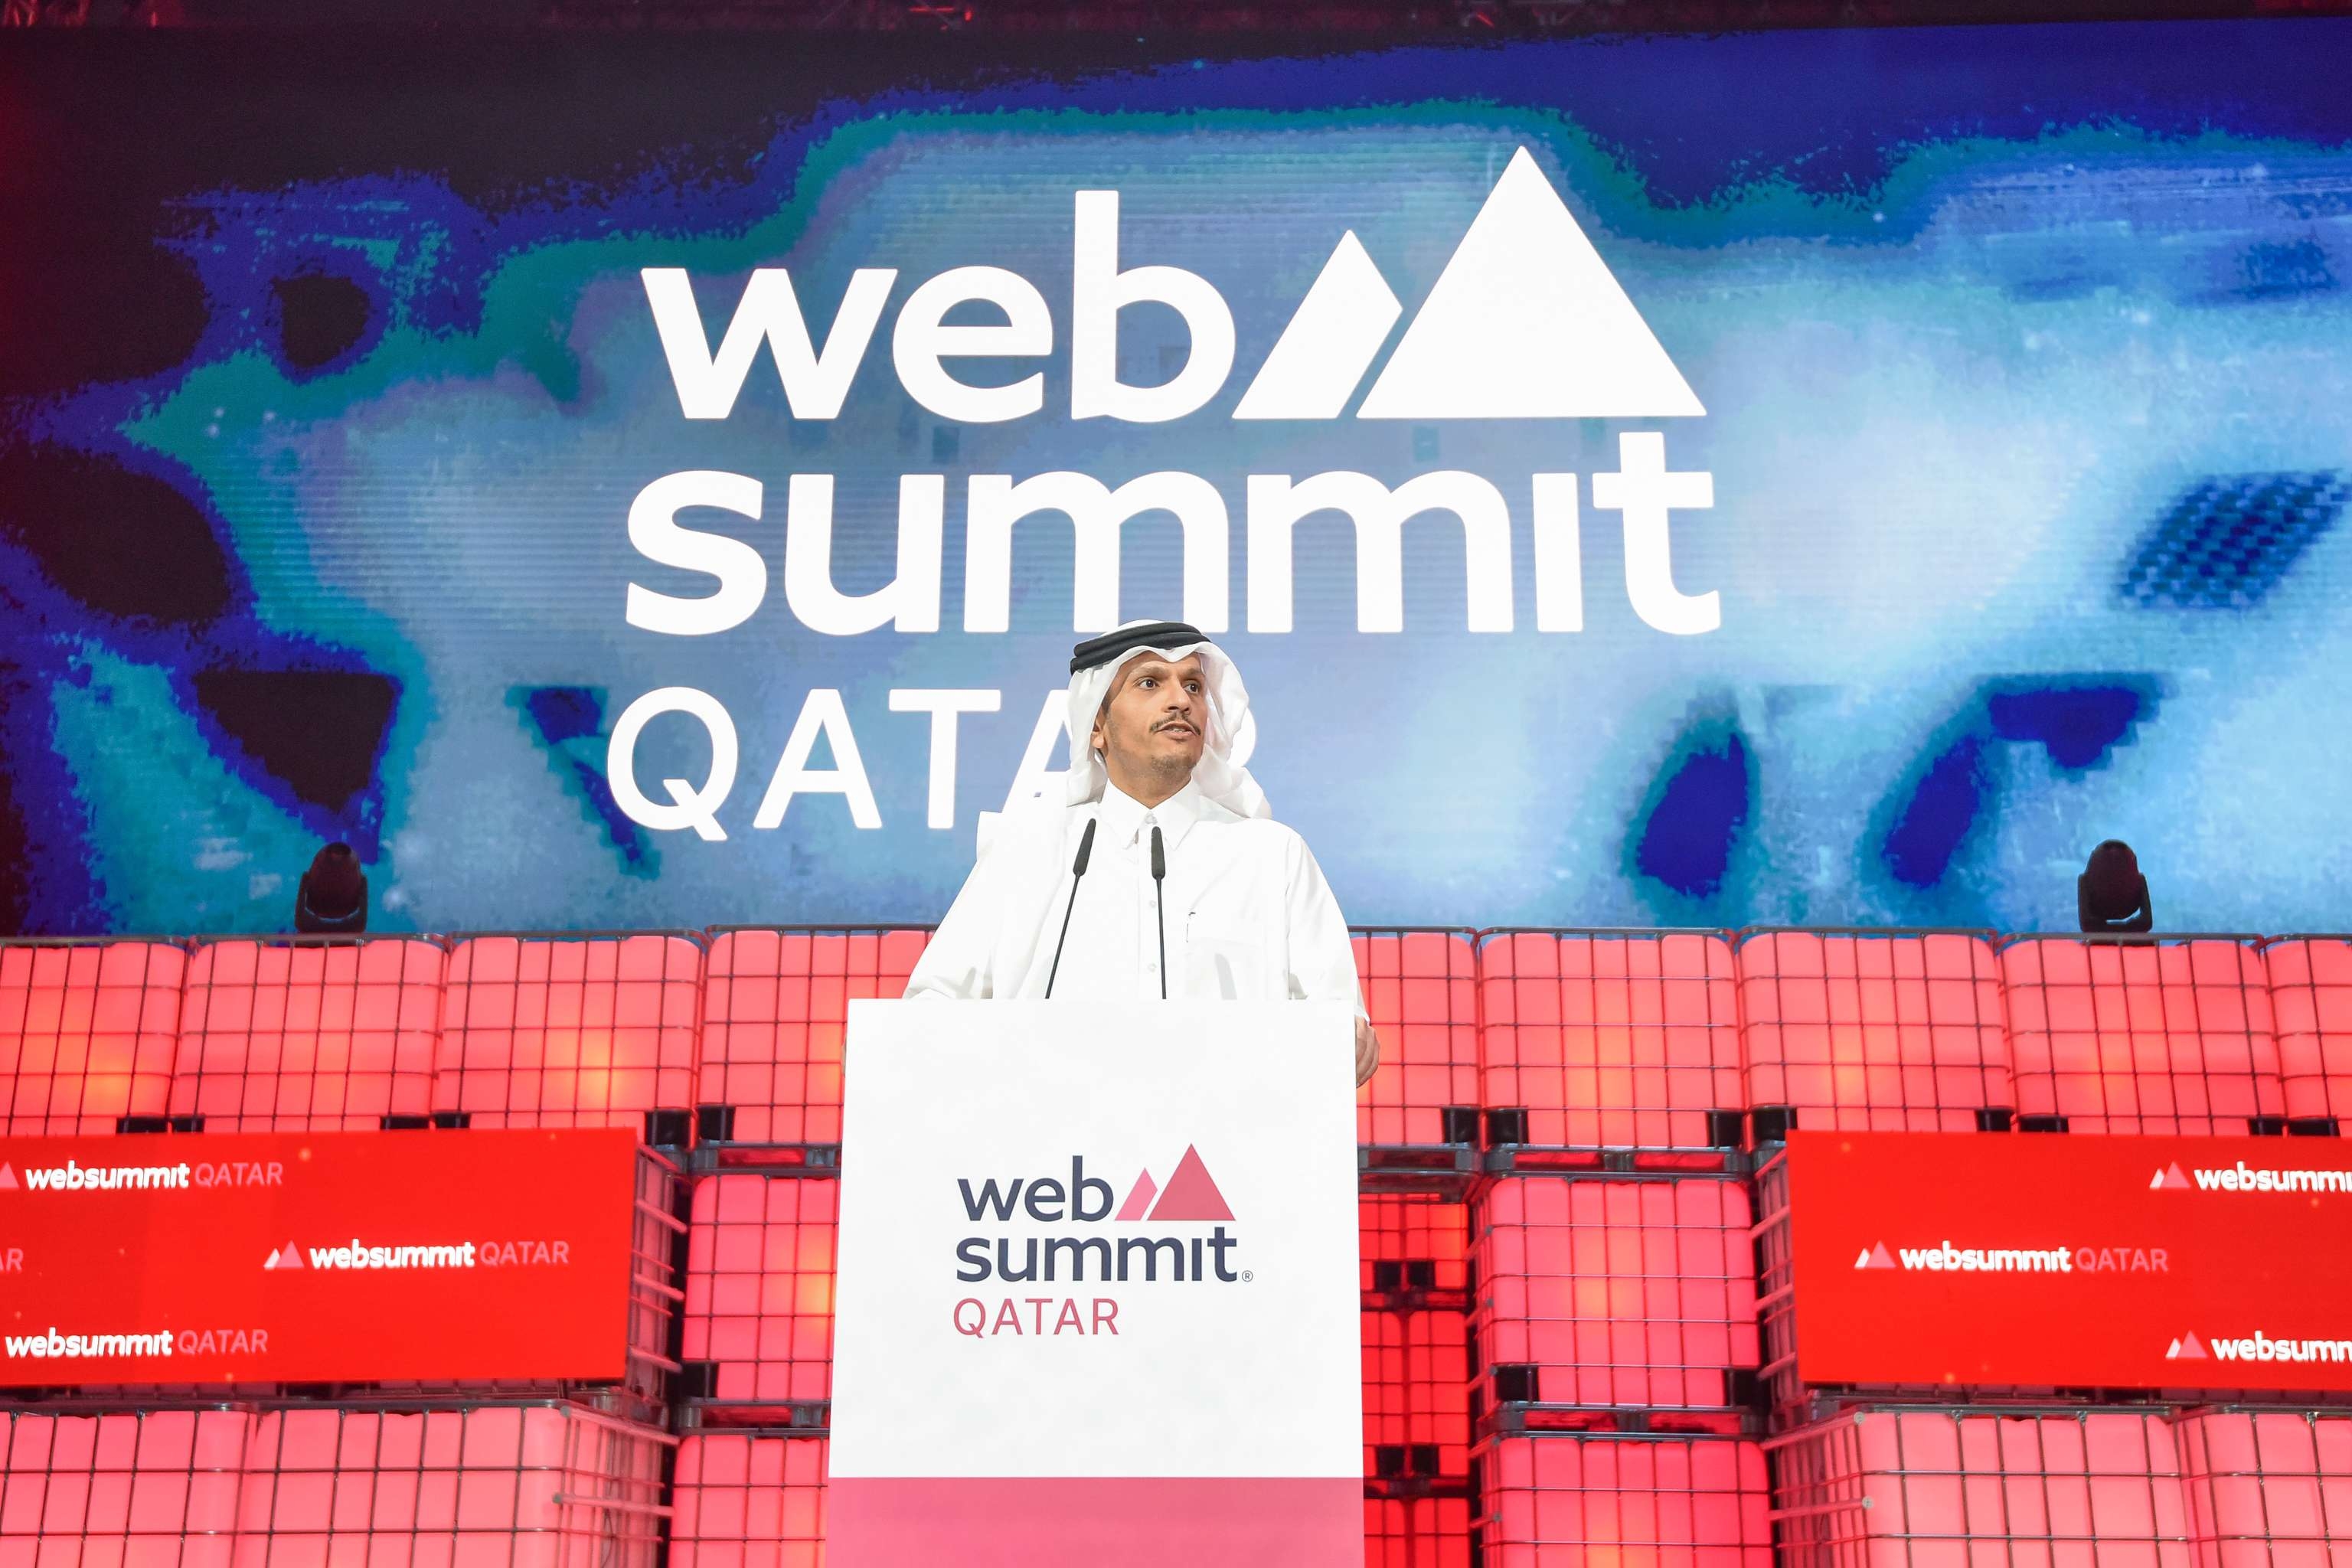 قمة الويب في قطر...أضخم مؤتمر عالمي للتكنولوجيا ينعقد في الشرق الأوسط